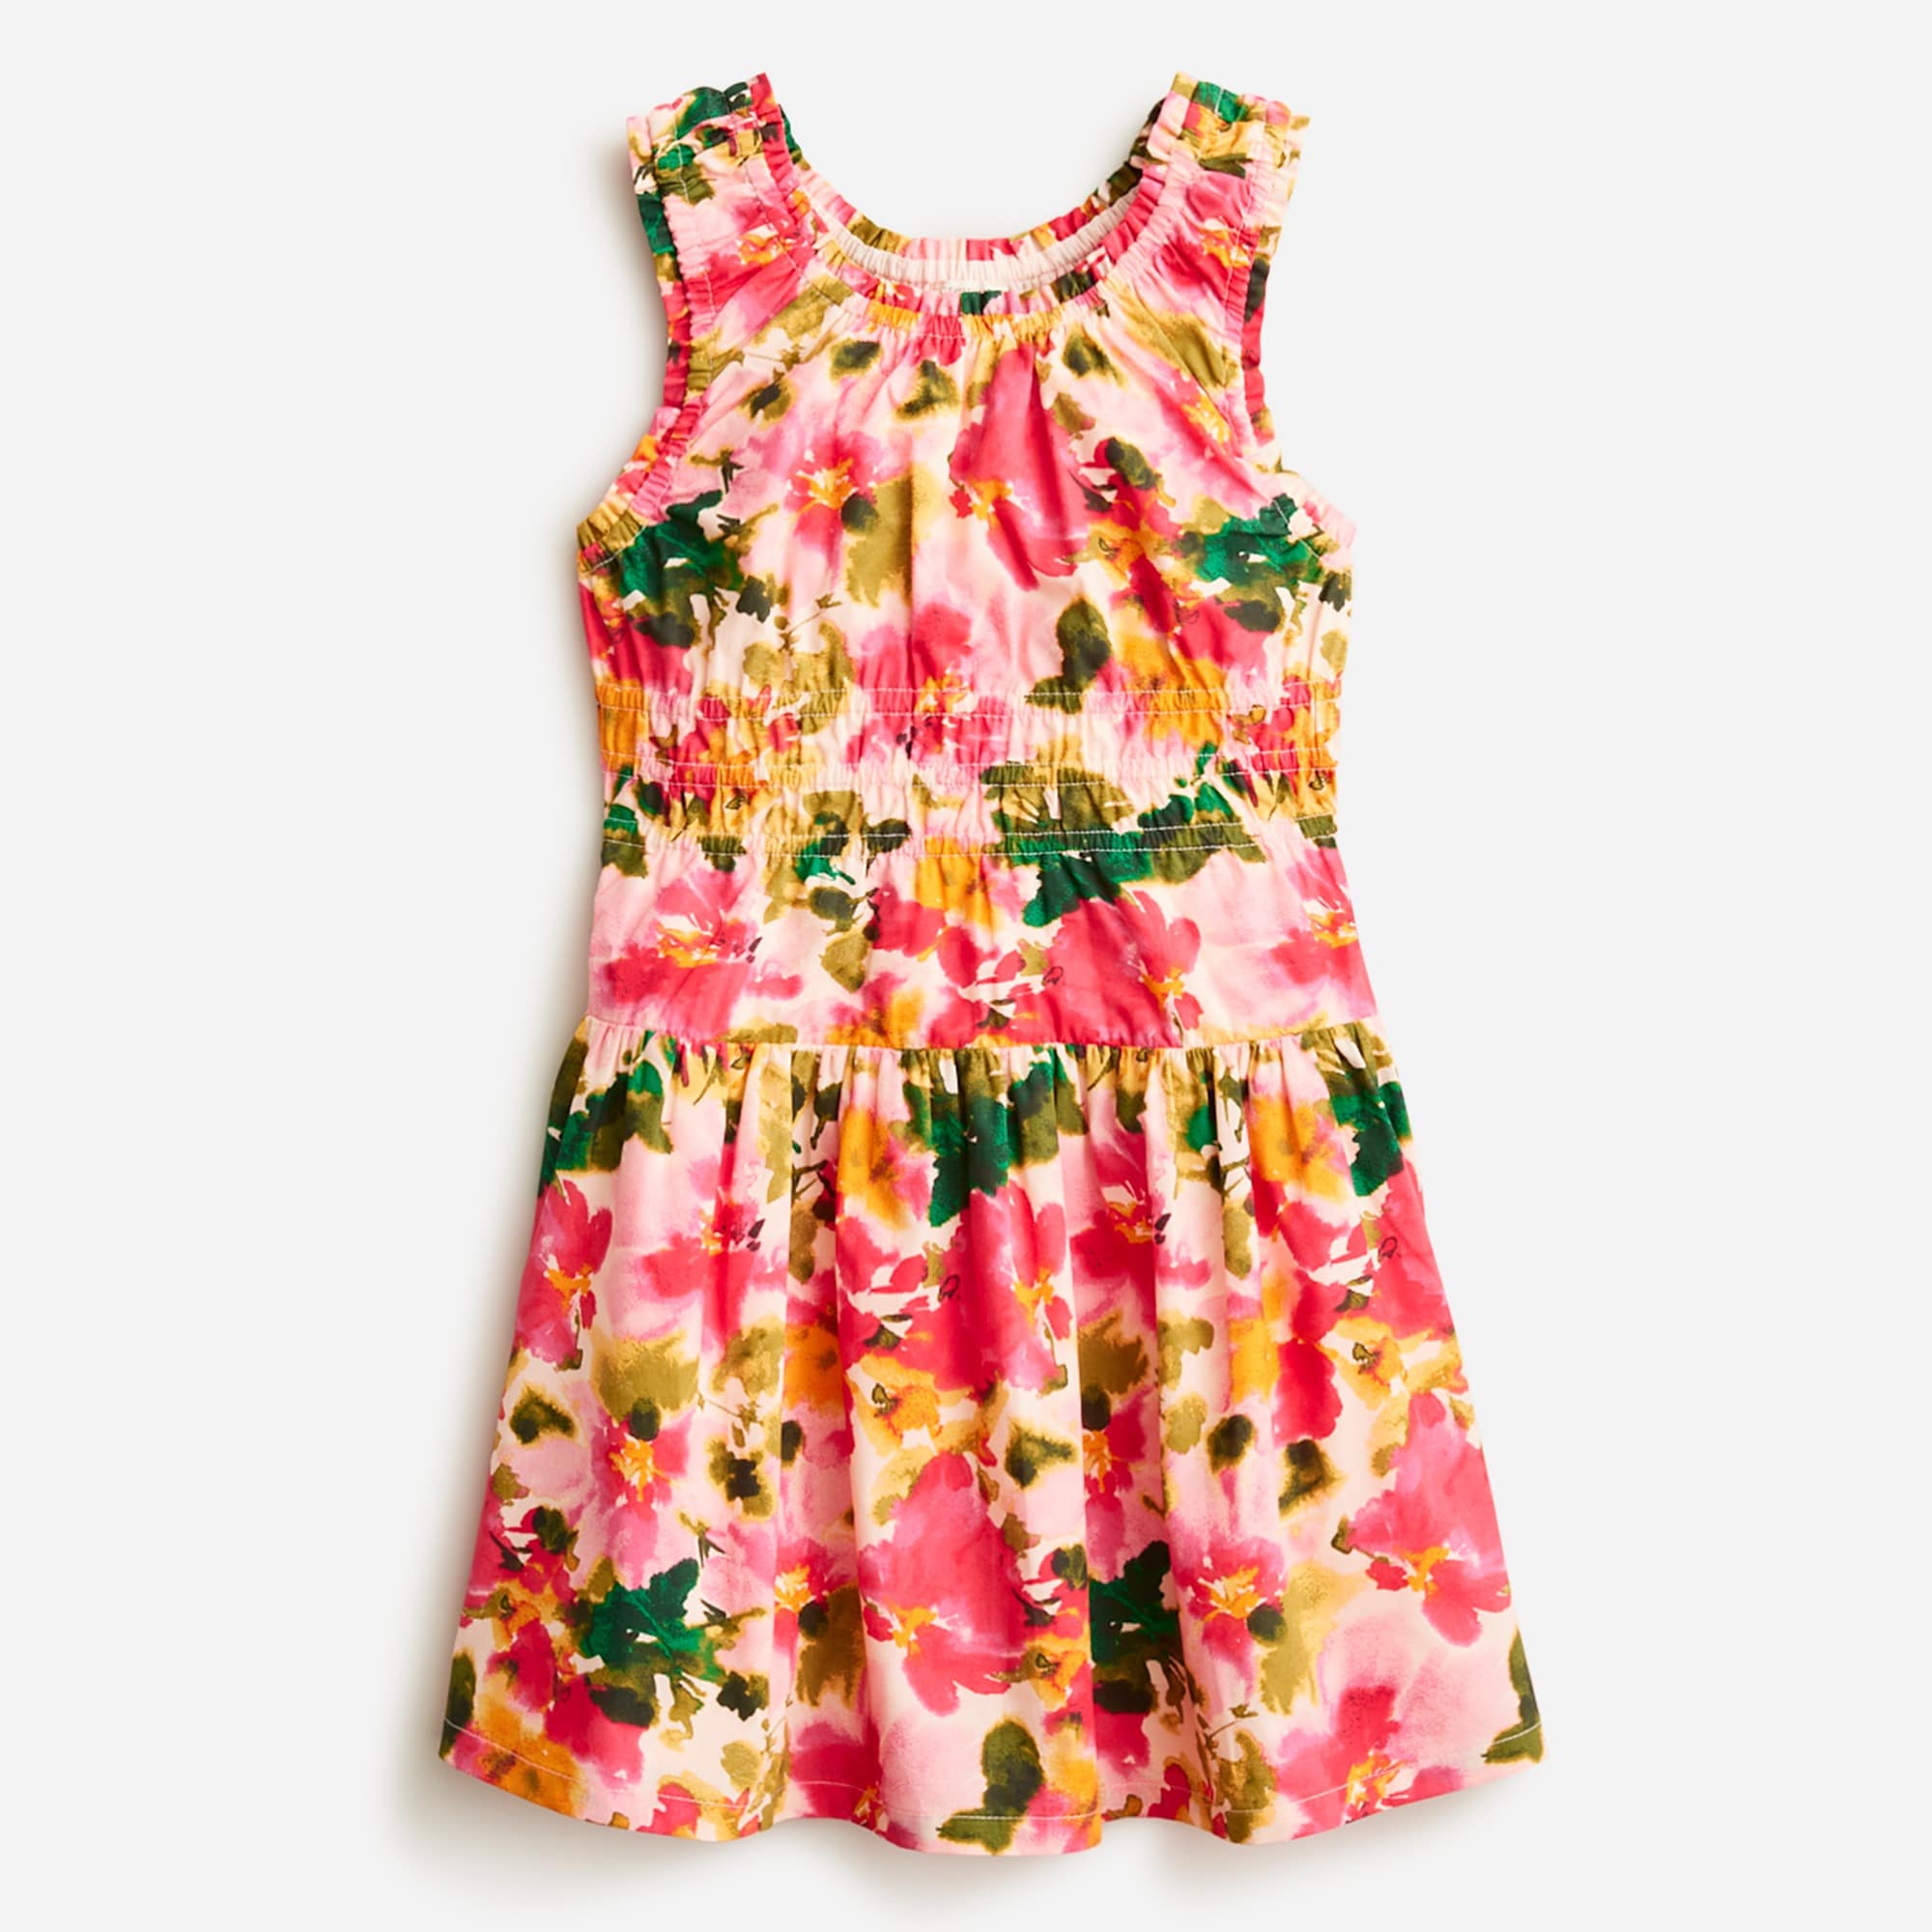  Girls' scoopneck dress in cotton poplin floral